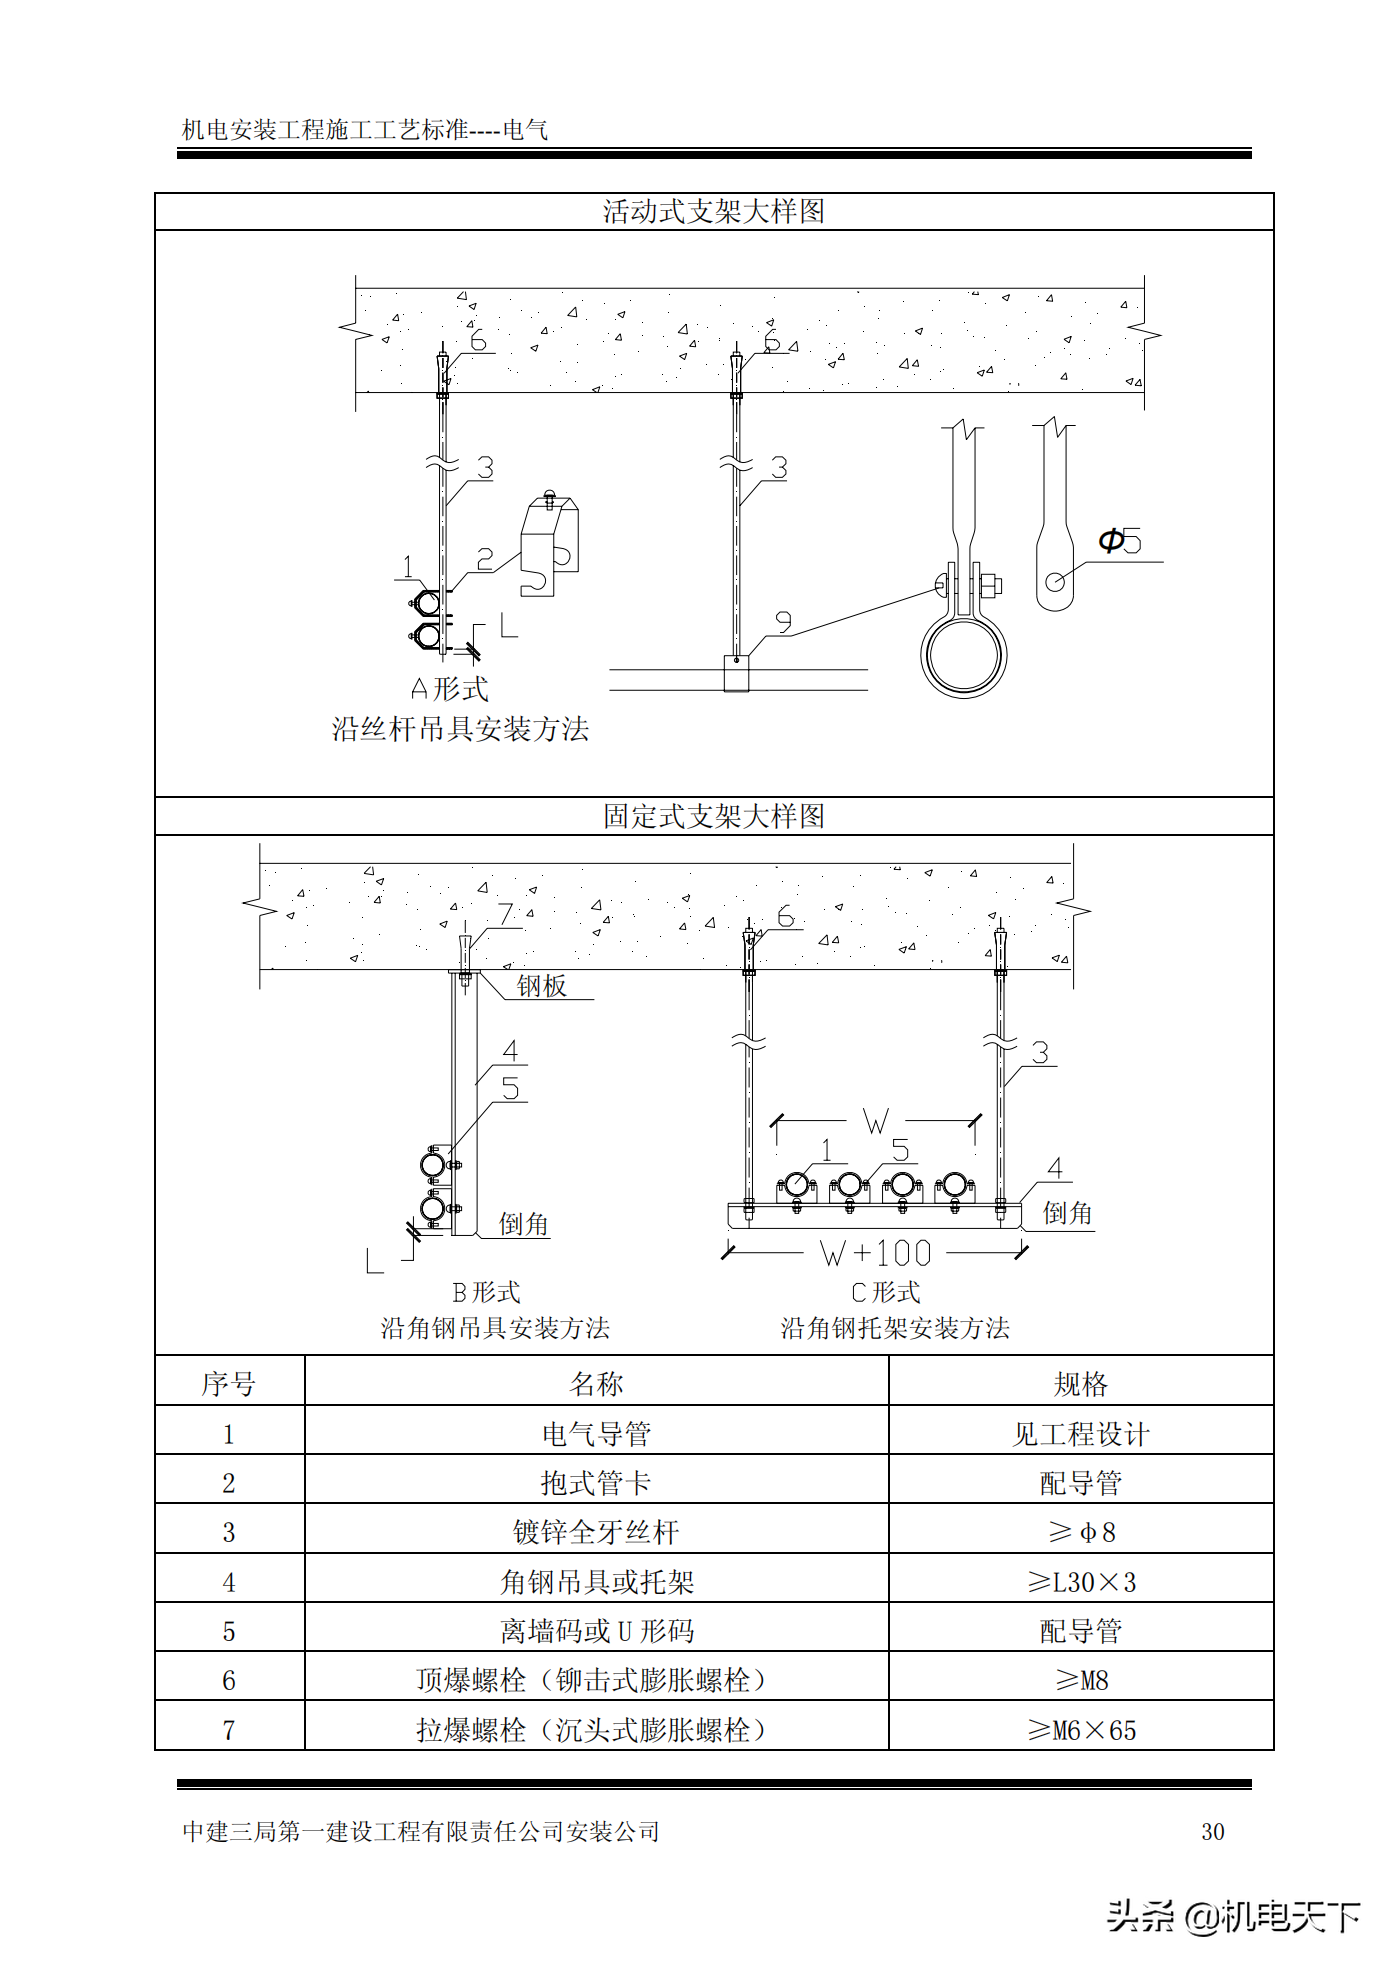 「中建三局」机电安装工程施工工艺标准（电气工程）